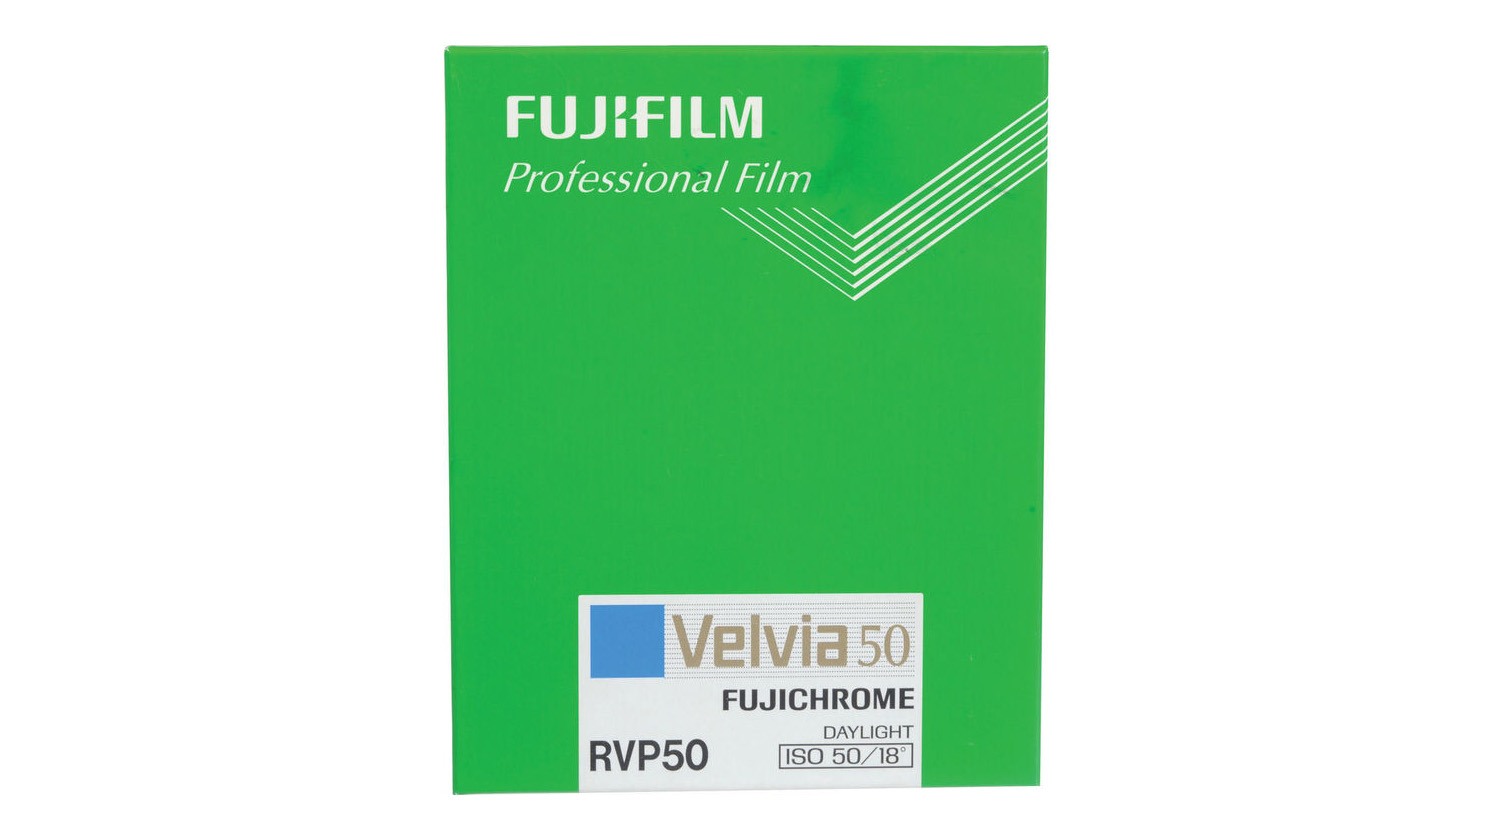 Fujifilm Philadelphia 50 4 x 5